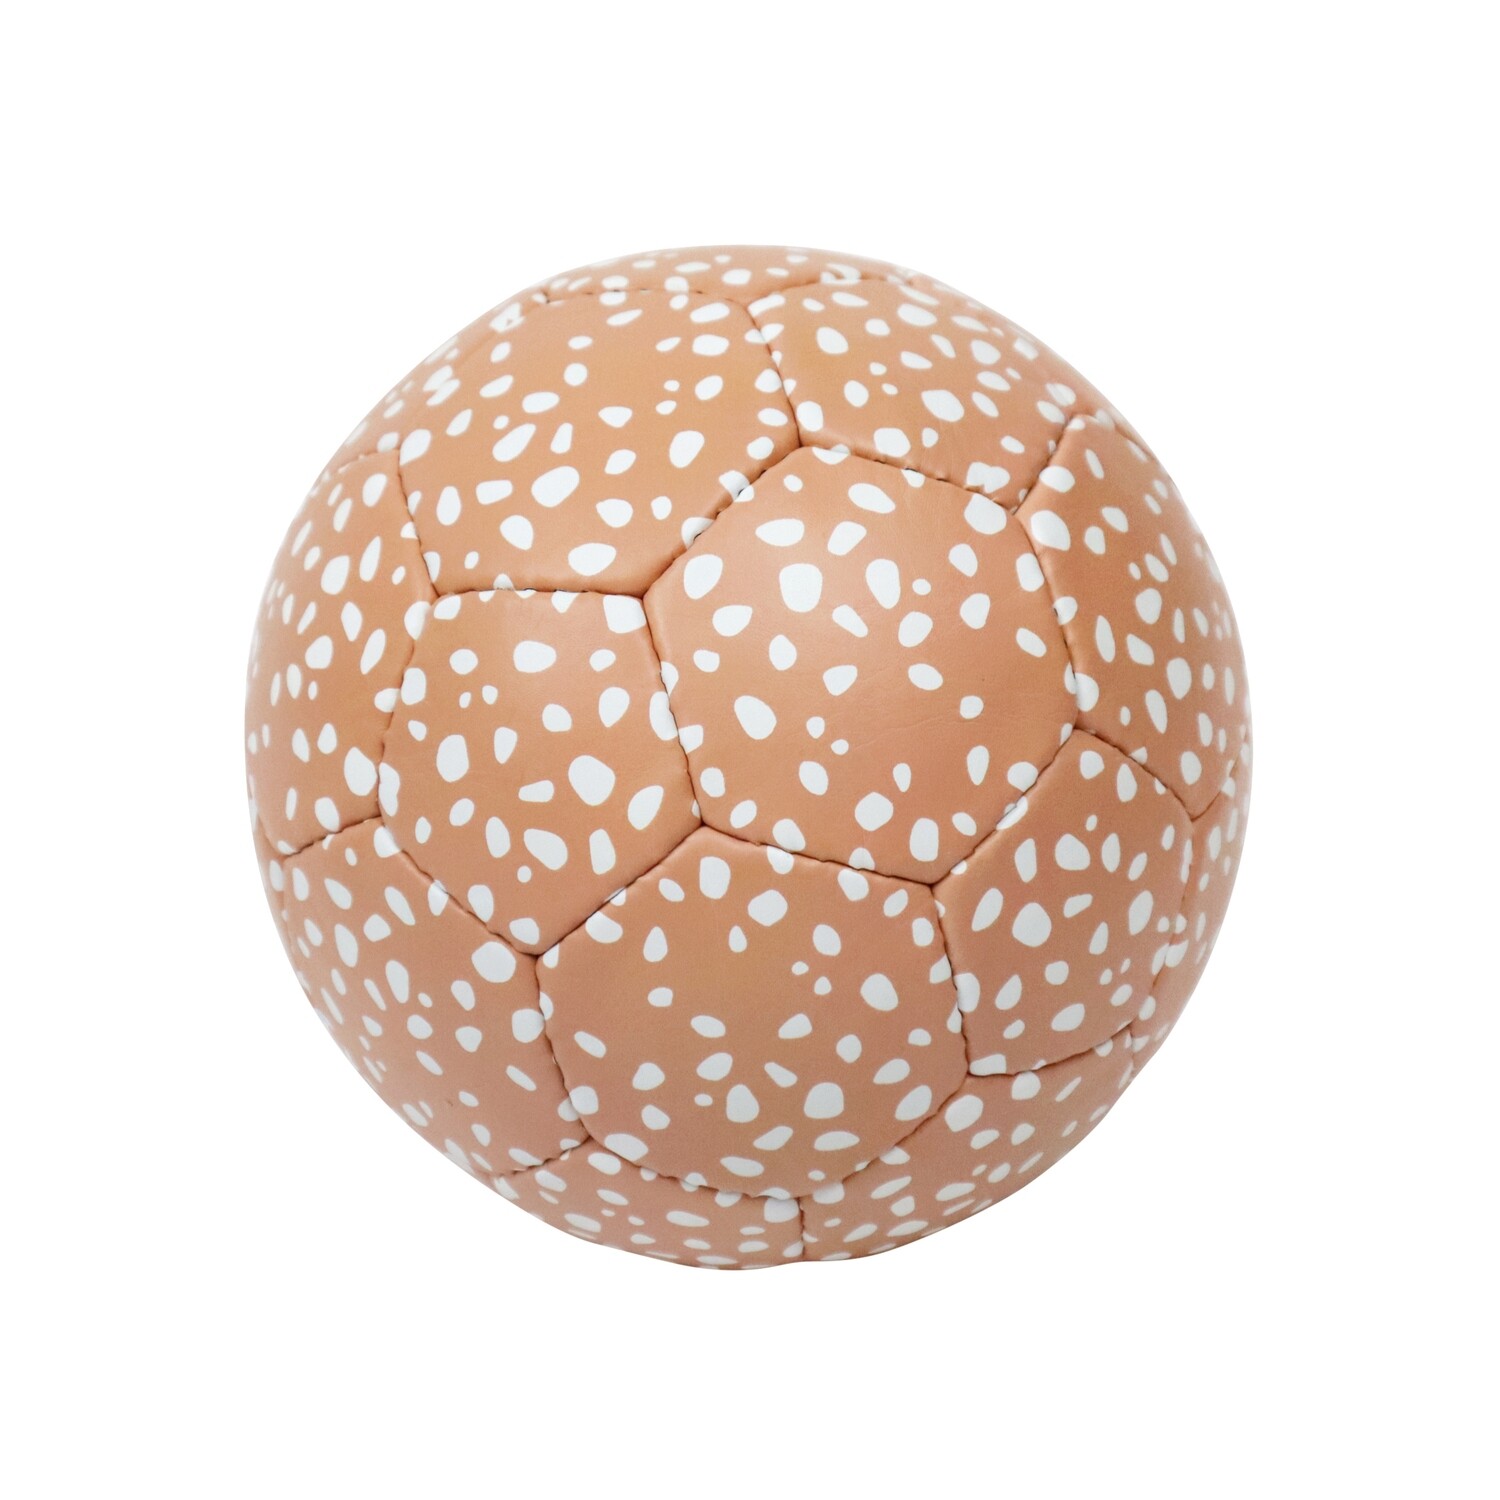 SOCKER BALL  | Peach white dots